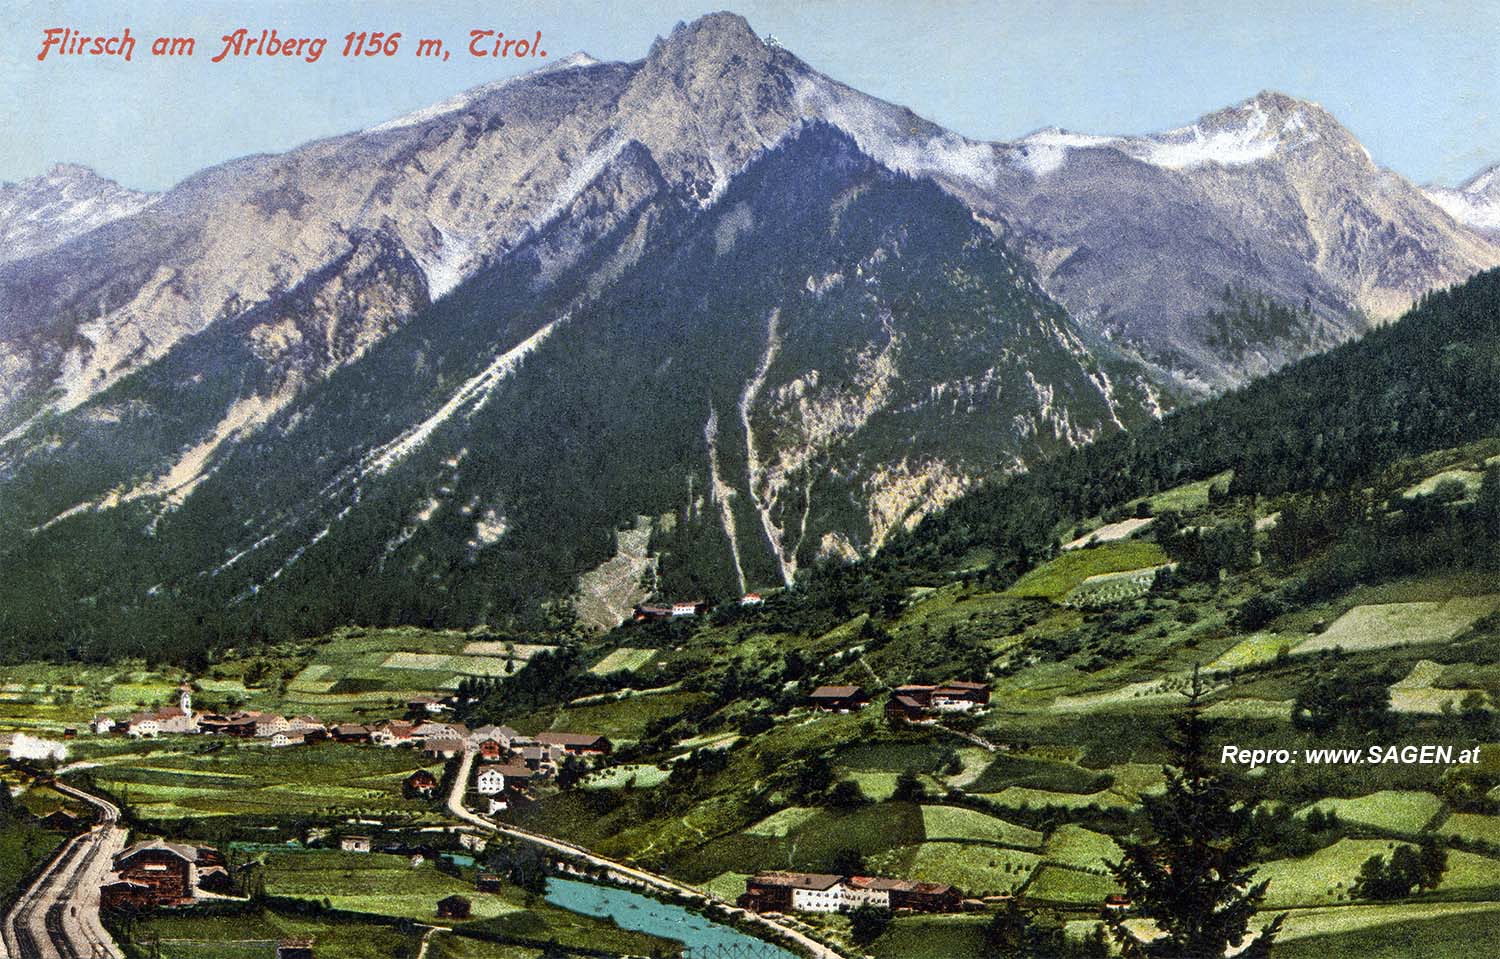 Flirsch am Arlberg